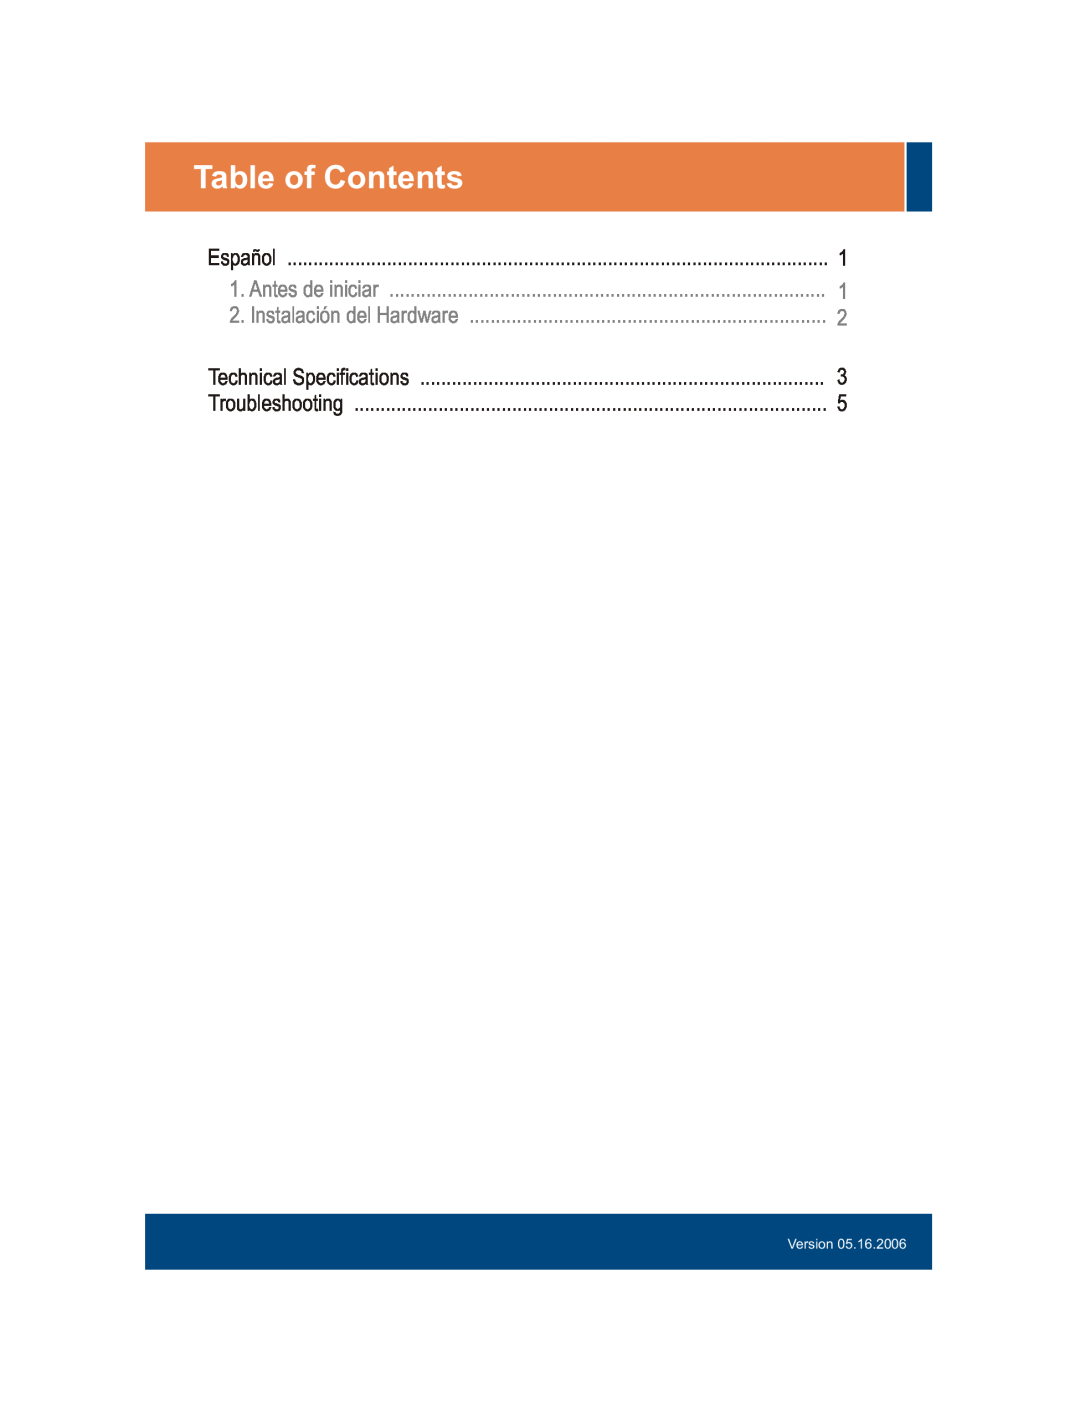 TRENDnet S55Eplus manual Table of Contents, Español, Antes de iniciar, Instalación del Hardware, Technical Specifications 